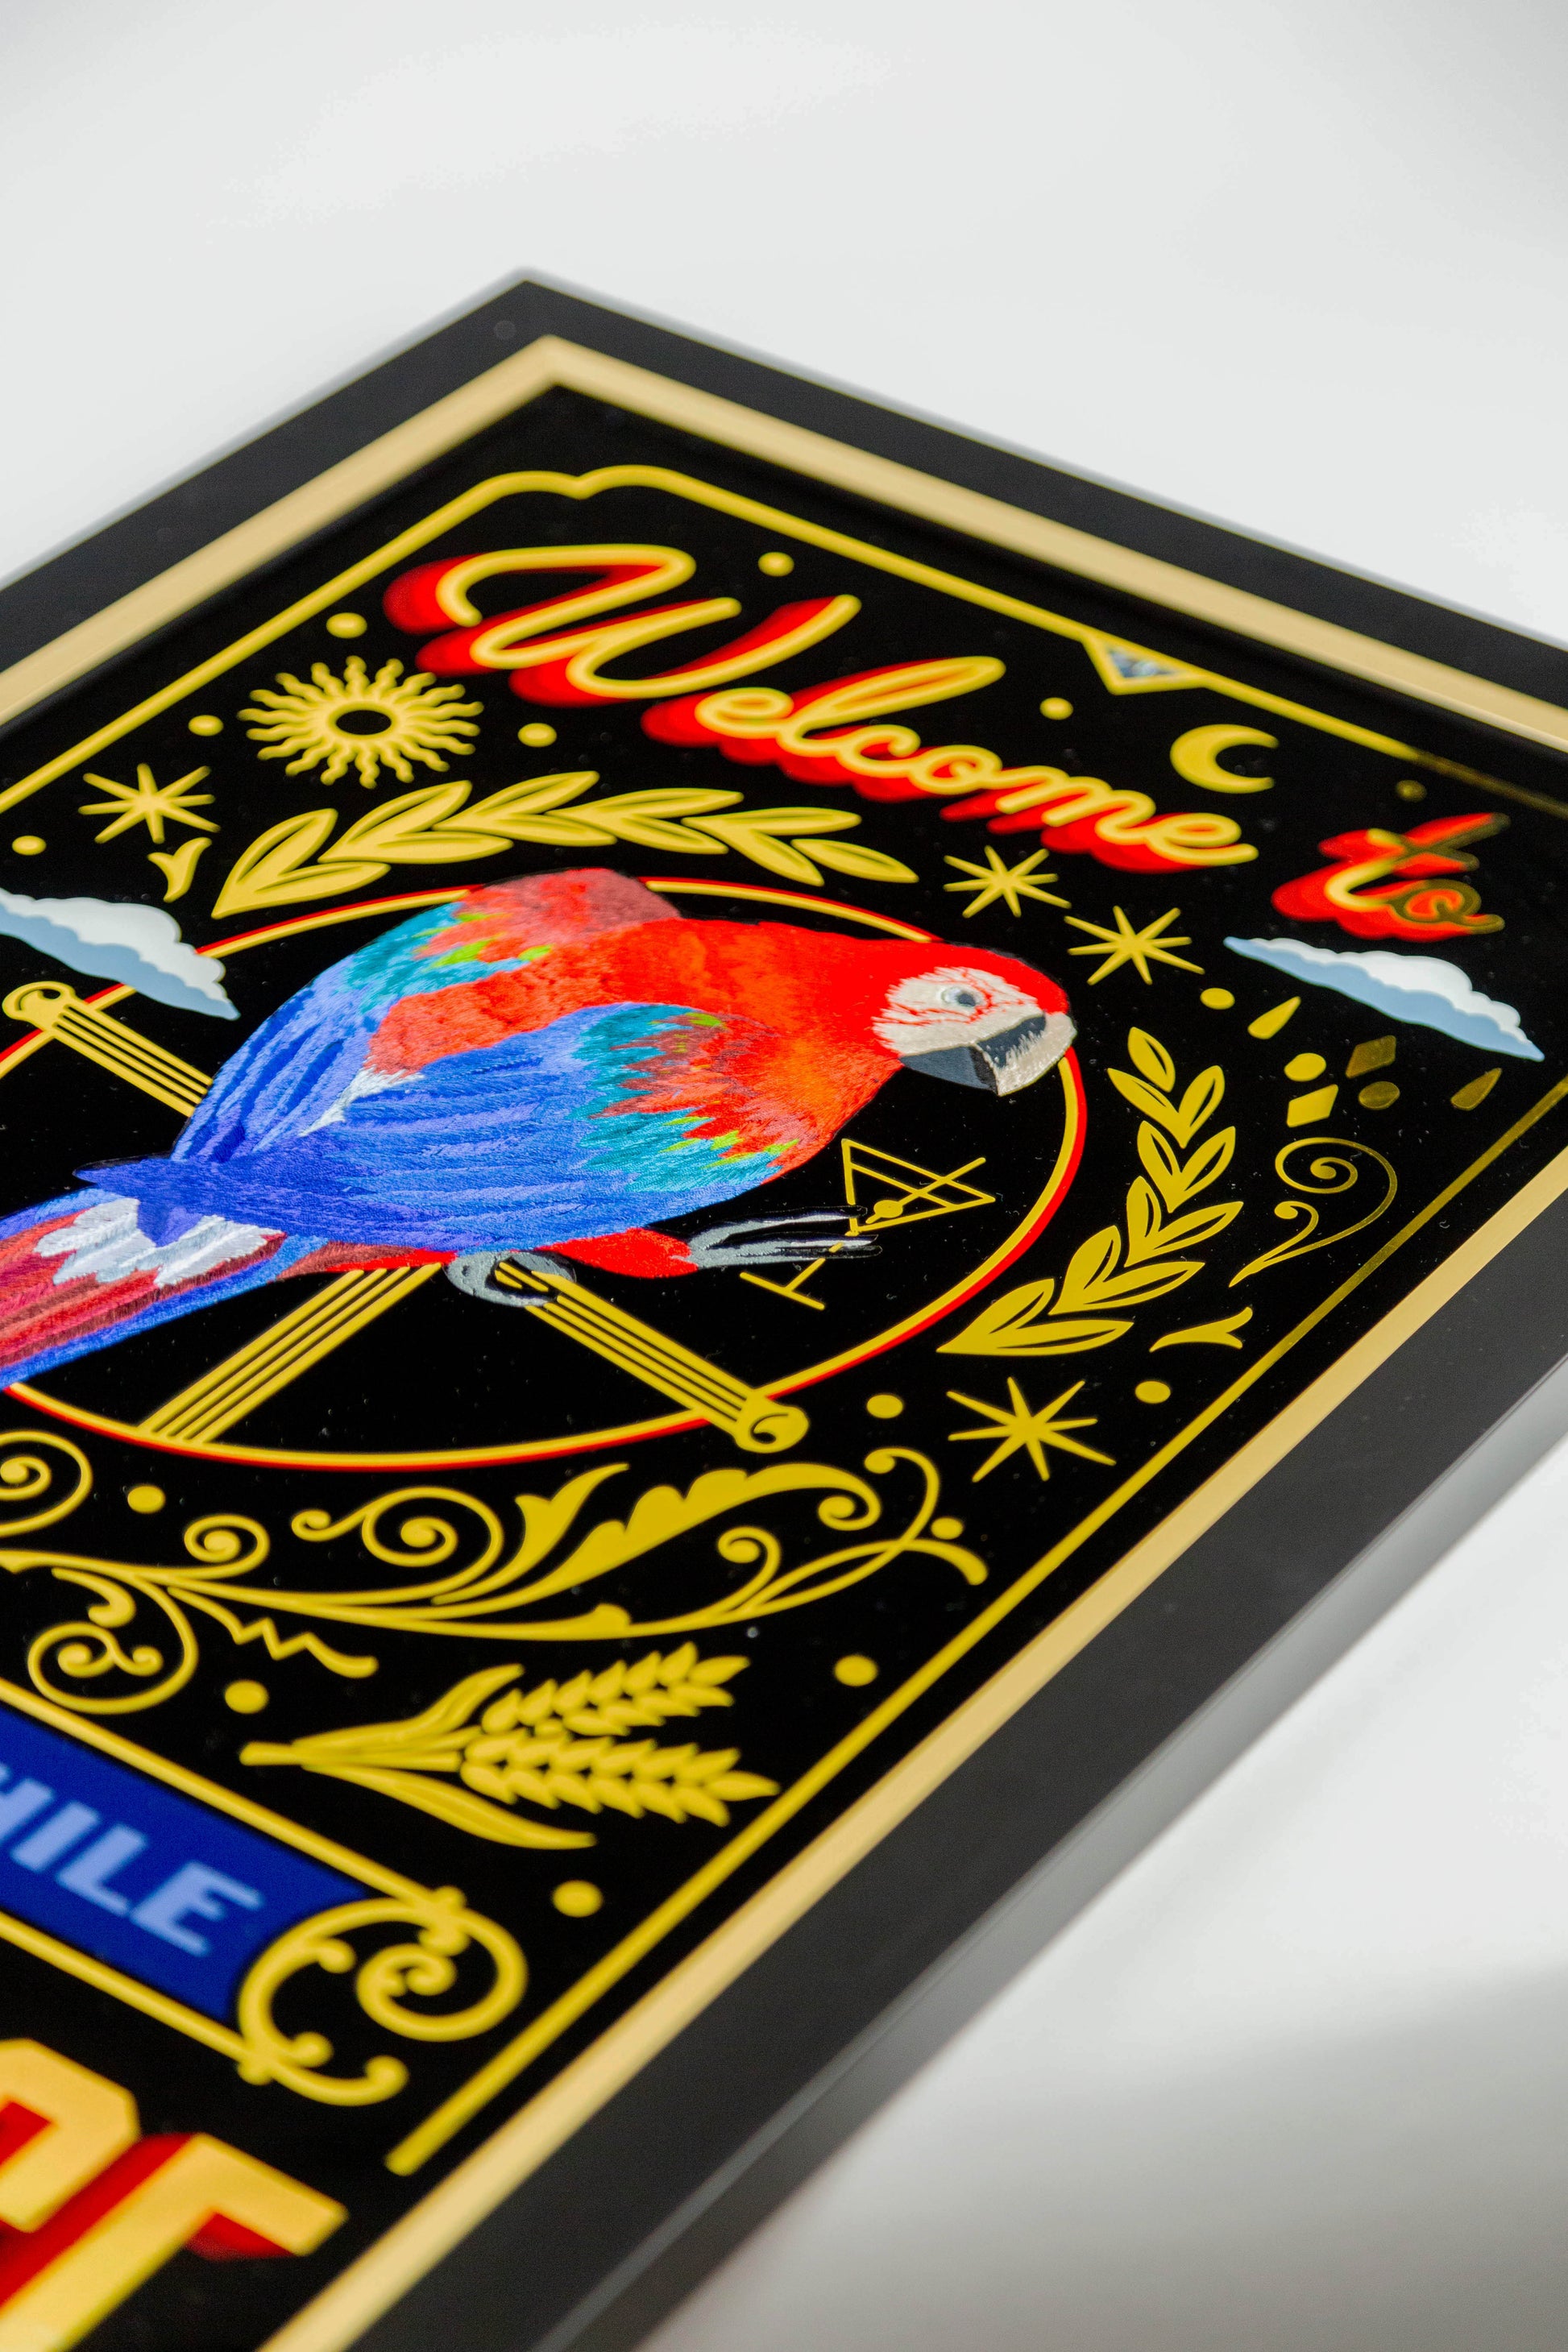 parrot artwork frame detail